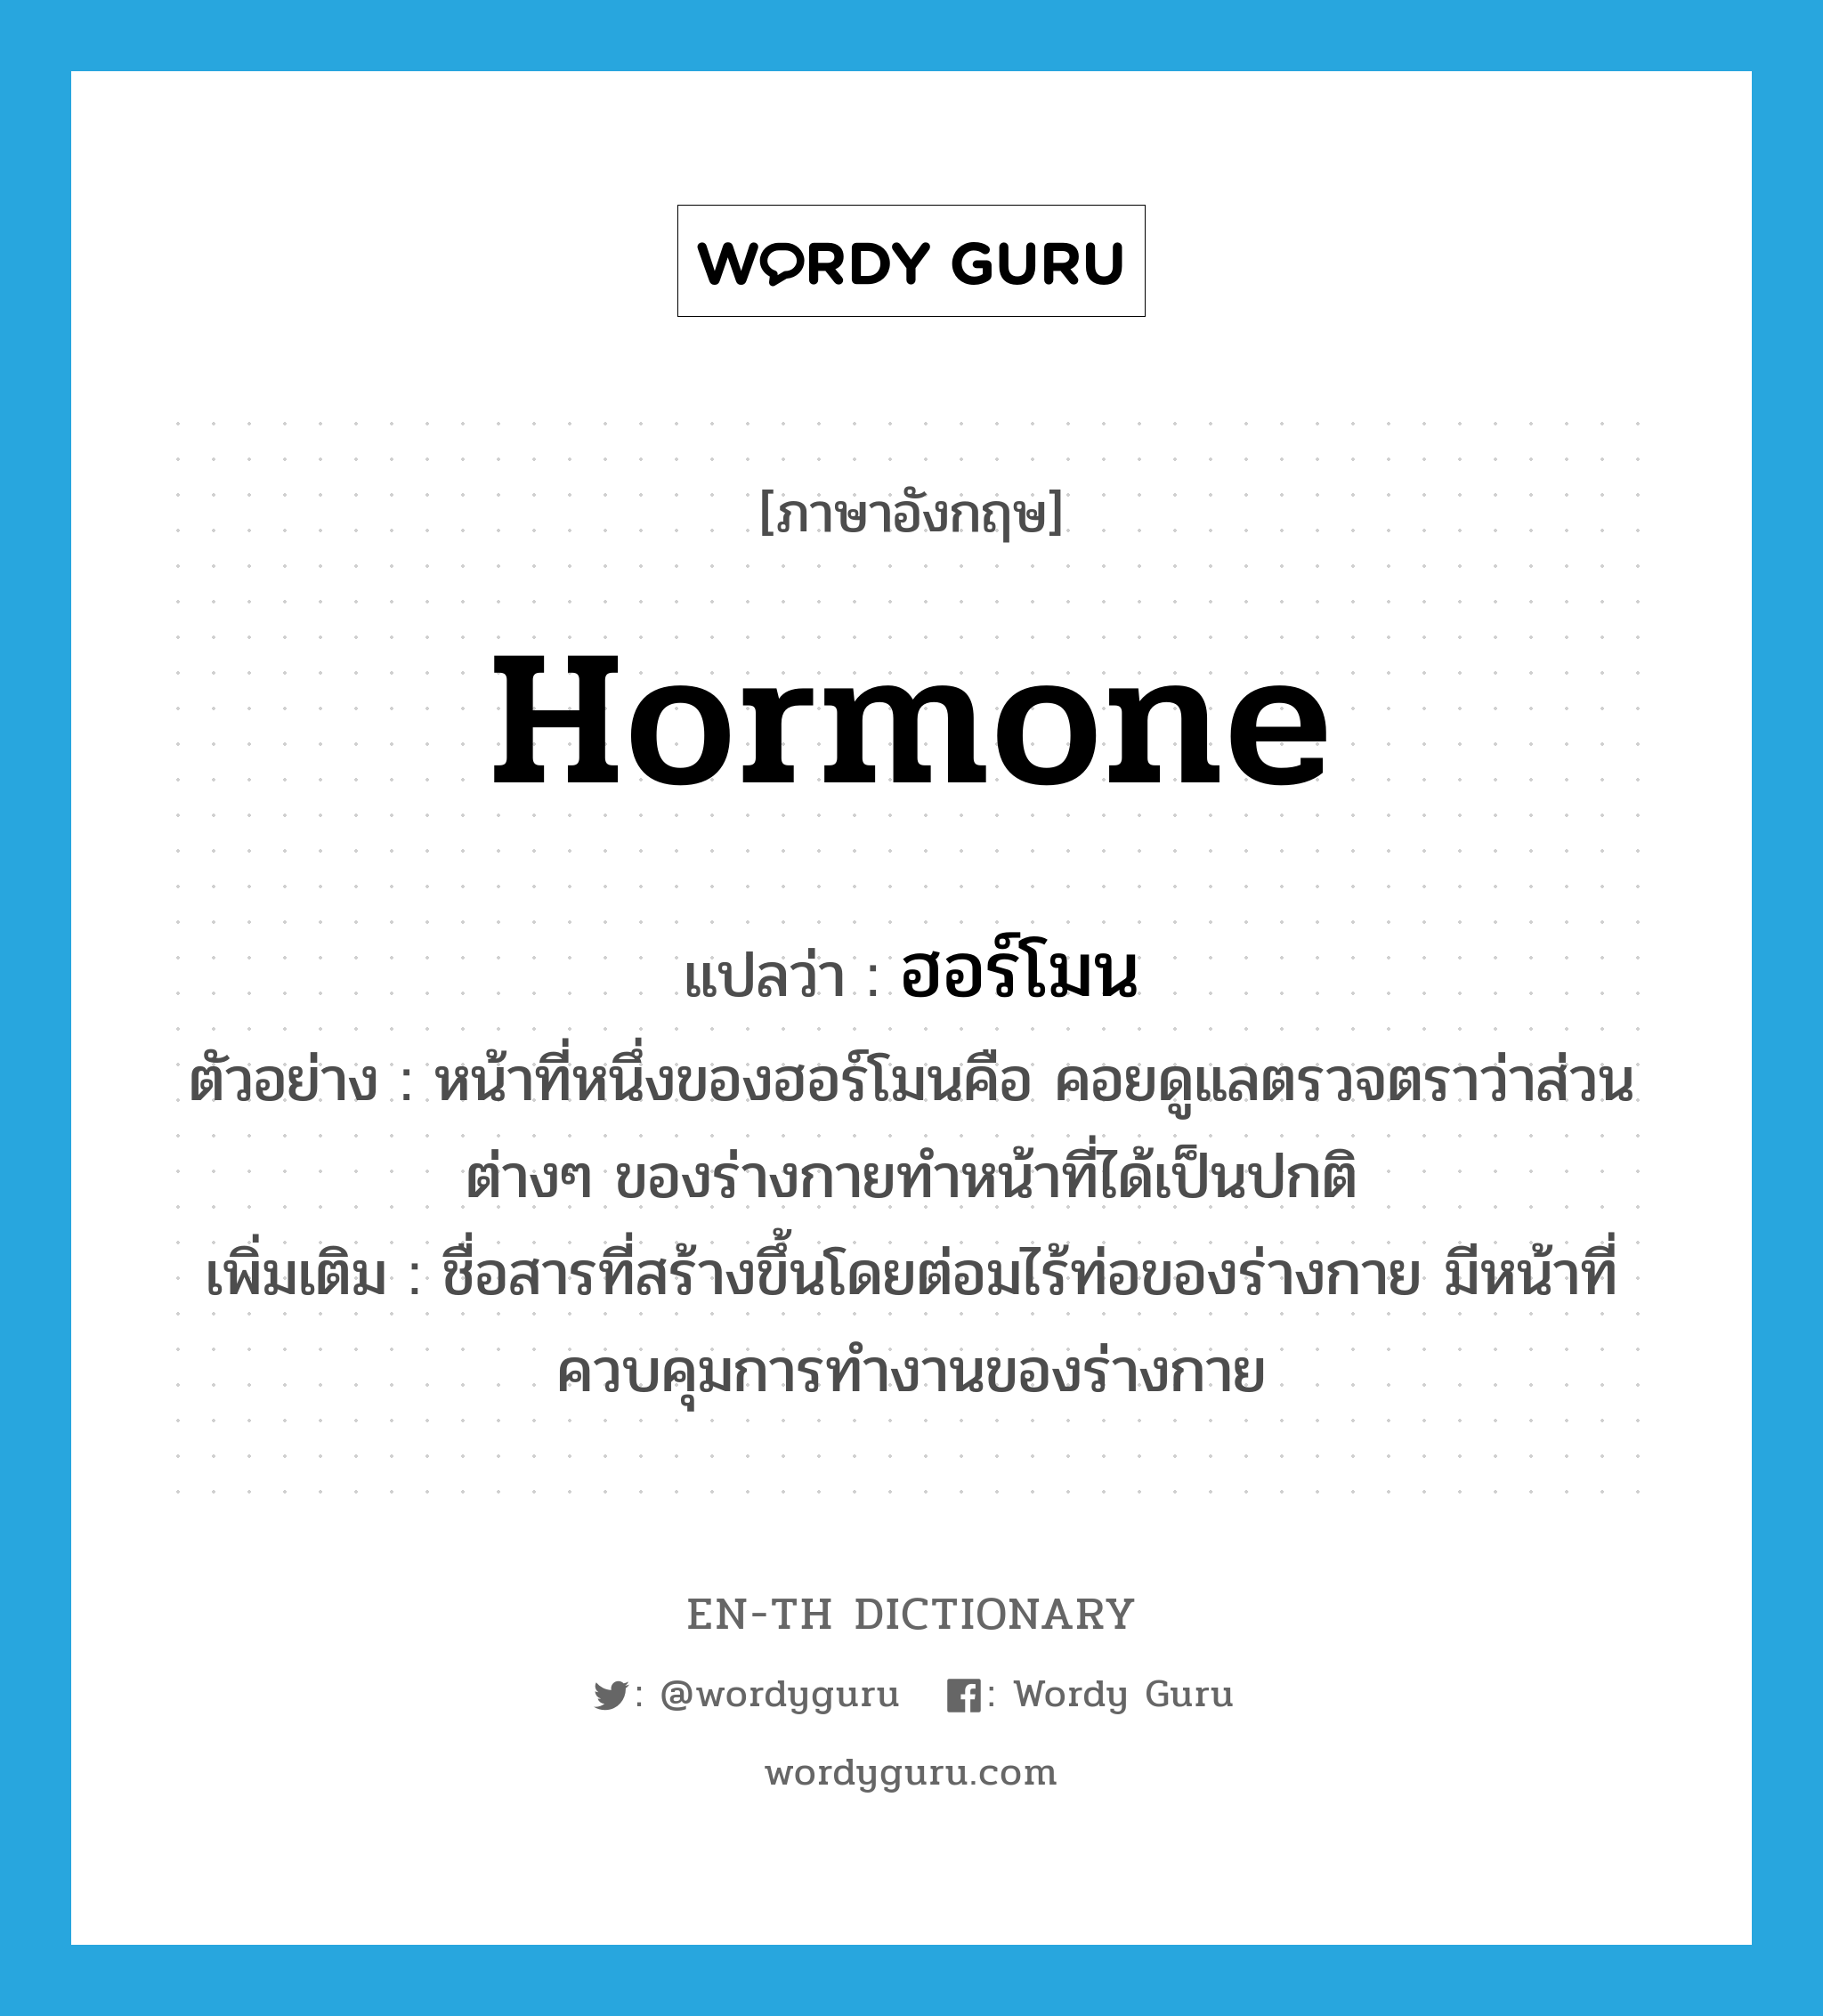 ฮอร์โมน, สารเคมีในร่างกายที่กระตุ้นการทำงานของอวัยวะต่างๆ ภาษาอังกฤษ?, คำศัพท์ภาษาอังกฤษ ฮอร์โมน แปลว่า hormone ประเภท N ตัวอย่าง หน้าที่หนึ่งของฮอร์โมนคือ คอยดูแลตรวจตราว่าส่วนต่างๆ ของร่างกายทำหน้าที่ได้เป็นปกติ เพิ่มเติม ชื่อสารที่สร้างขึ้นโดยต่อมไร้ท่อของร่างกาย มีหน้าที่ควบคุมการทำงานของร่างกาย หมวด N